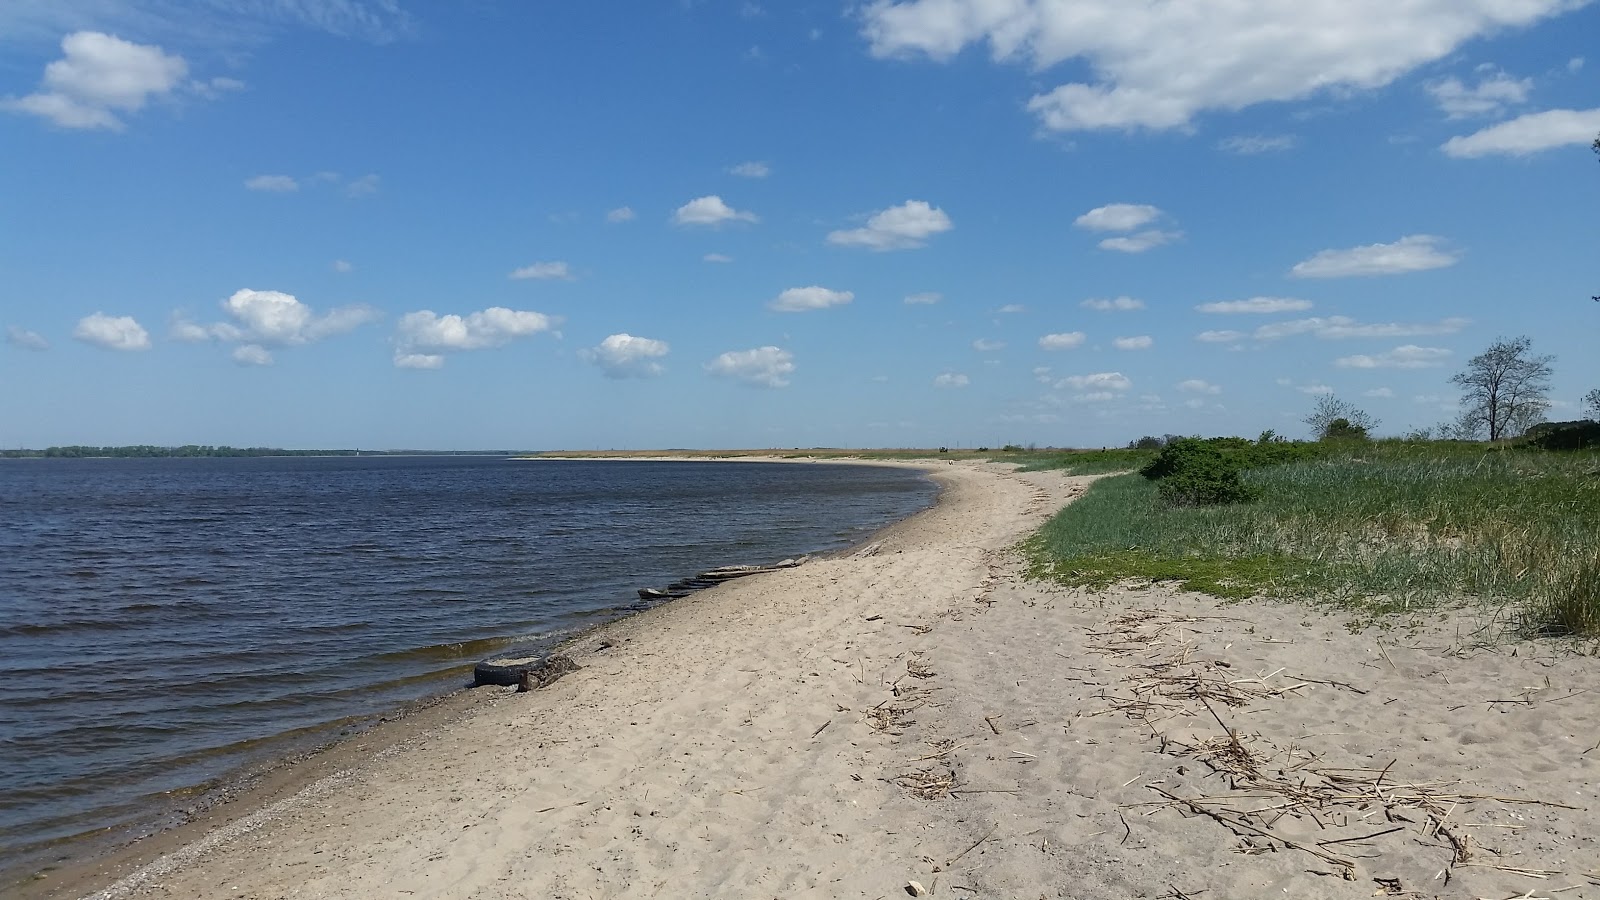 Poberezh'ye beach'in fotoğrafı çok temiz temizlik seviyesi ile